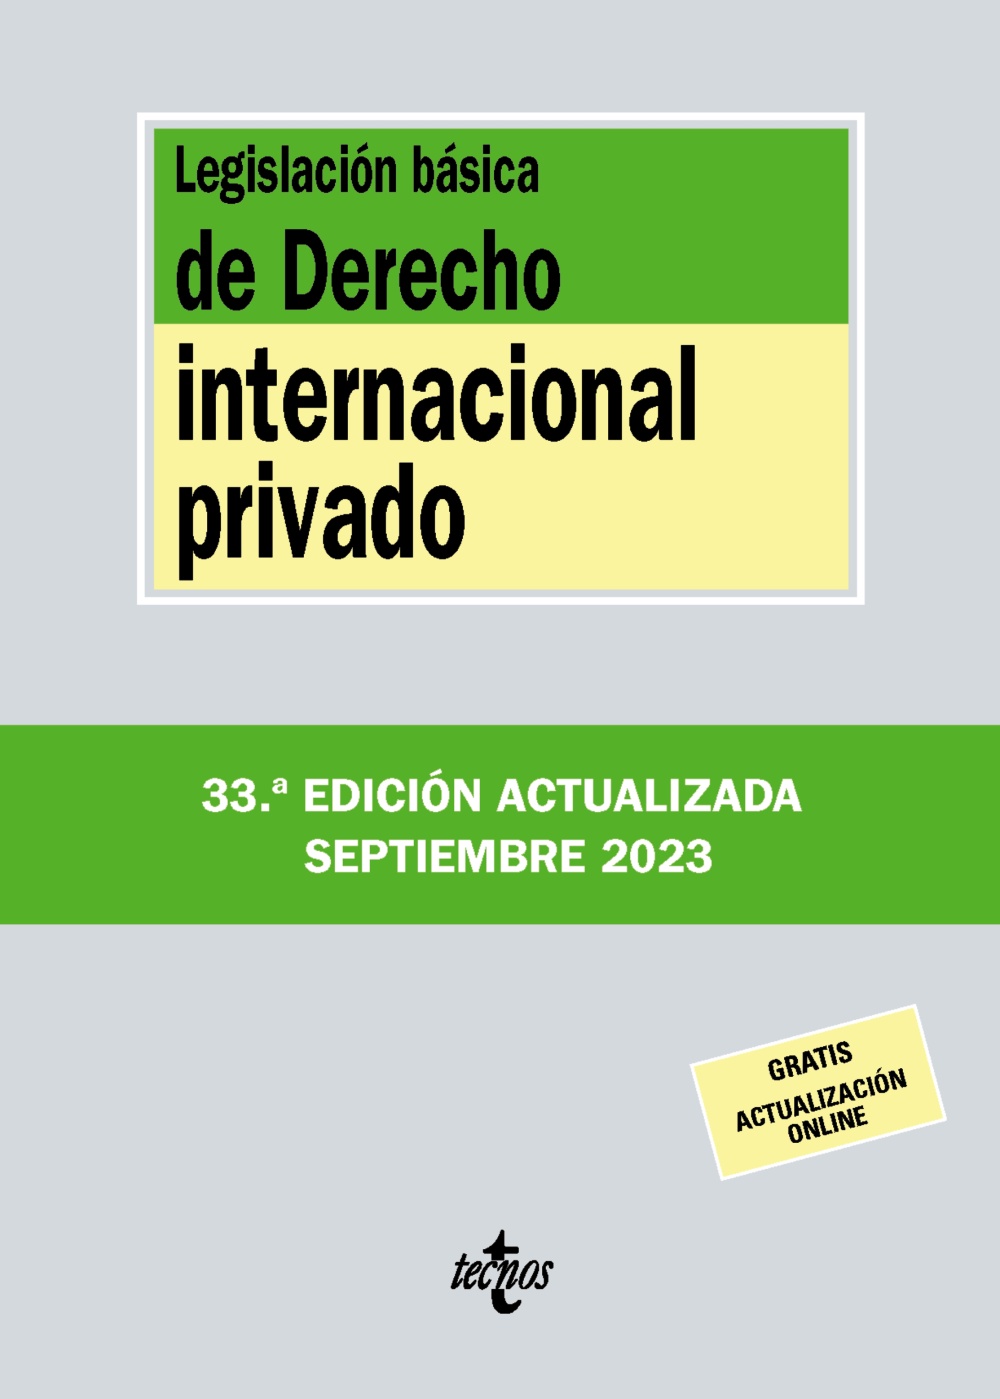 Imagen de portada del libro Legislación básica de Derecho internacional privado